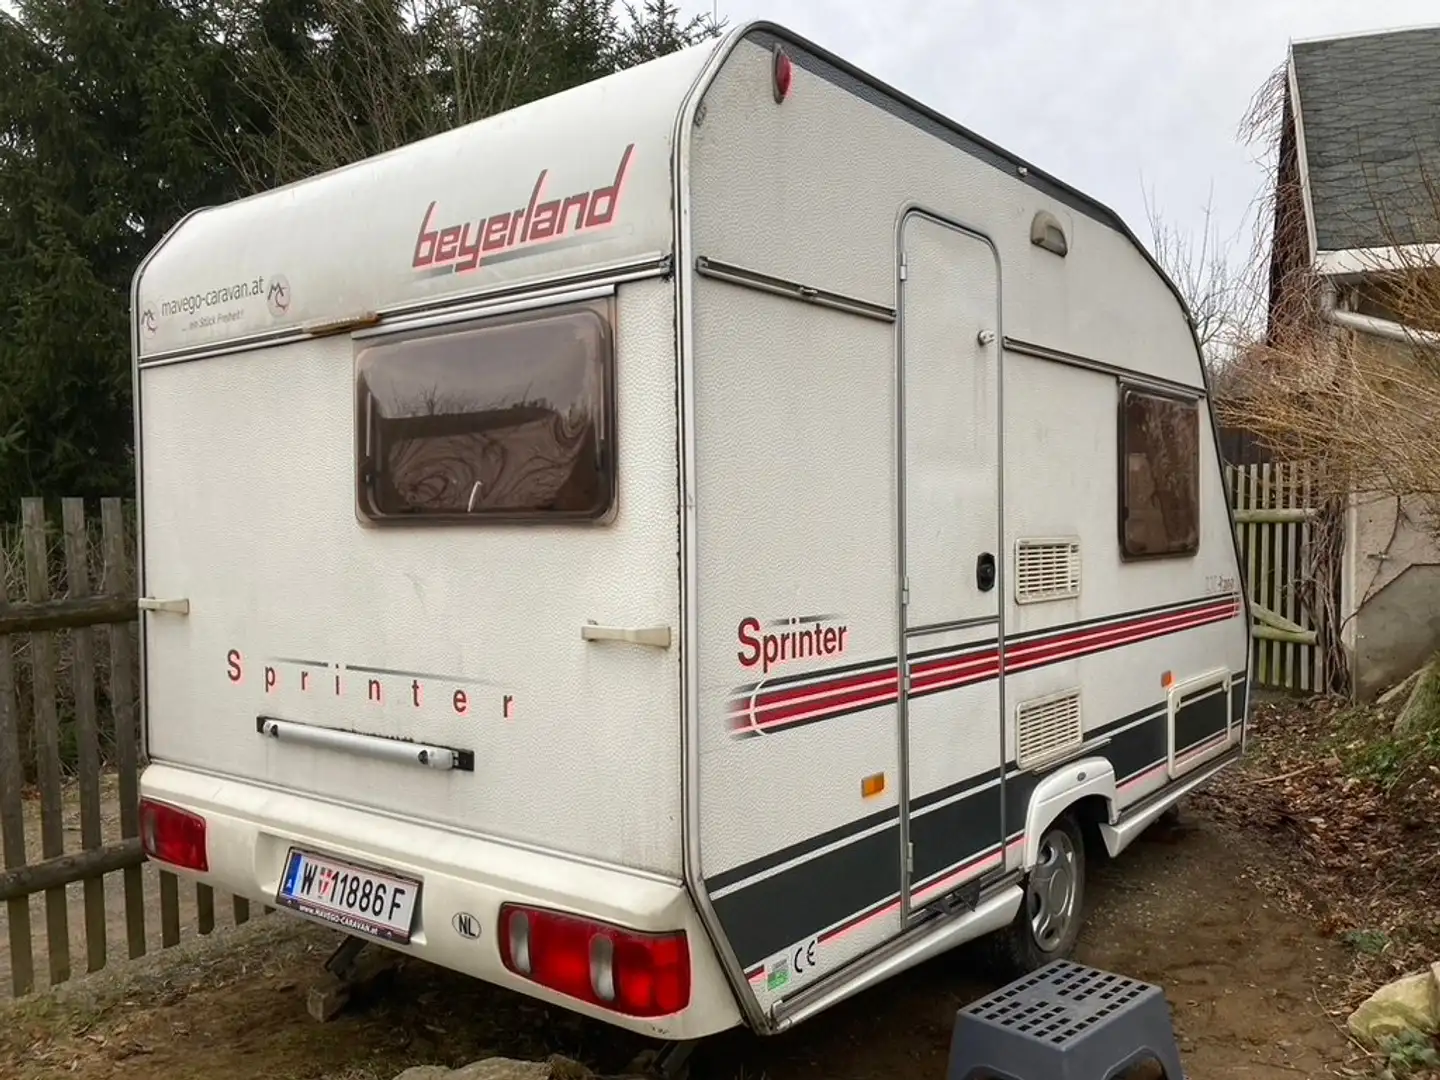 Caravans-Wohnm Wohnwagen Beyerland Sprinter - 1